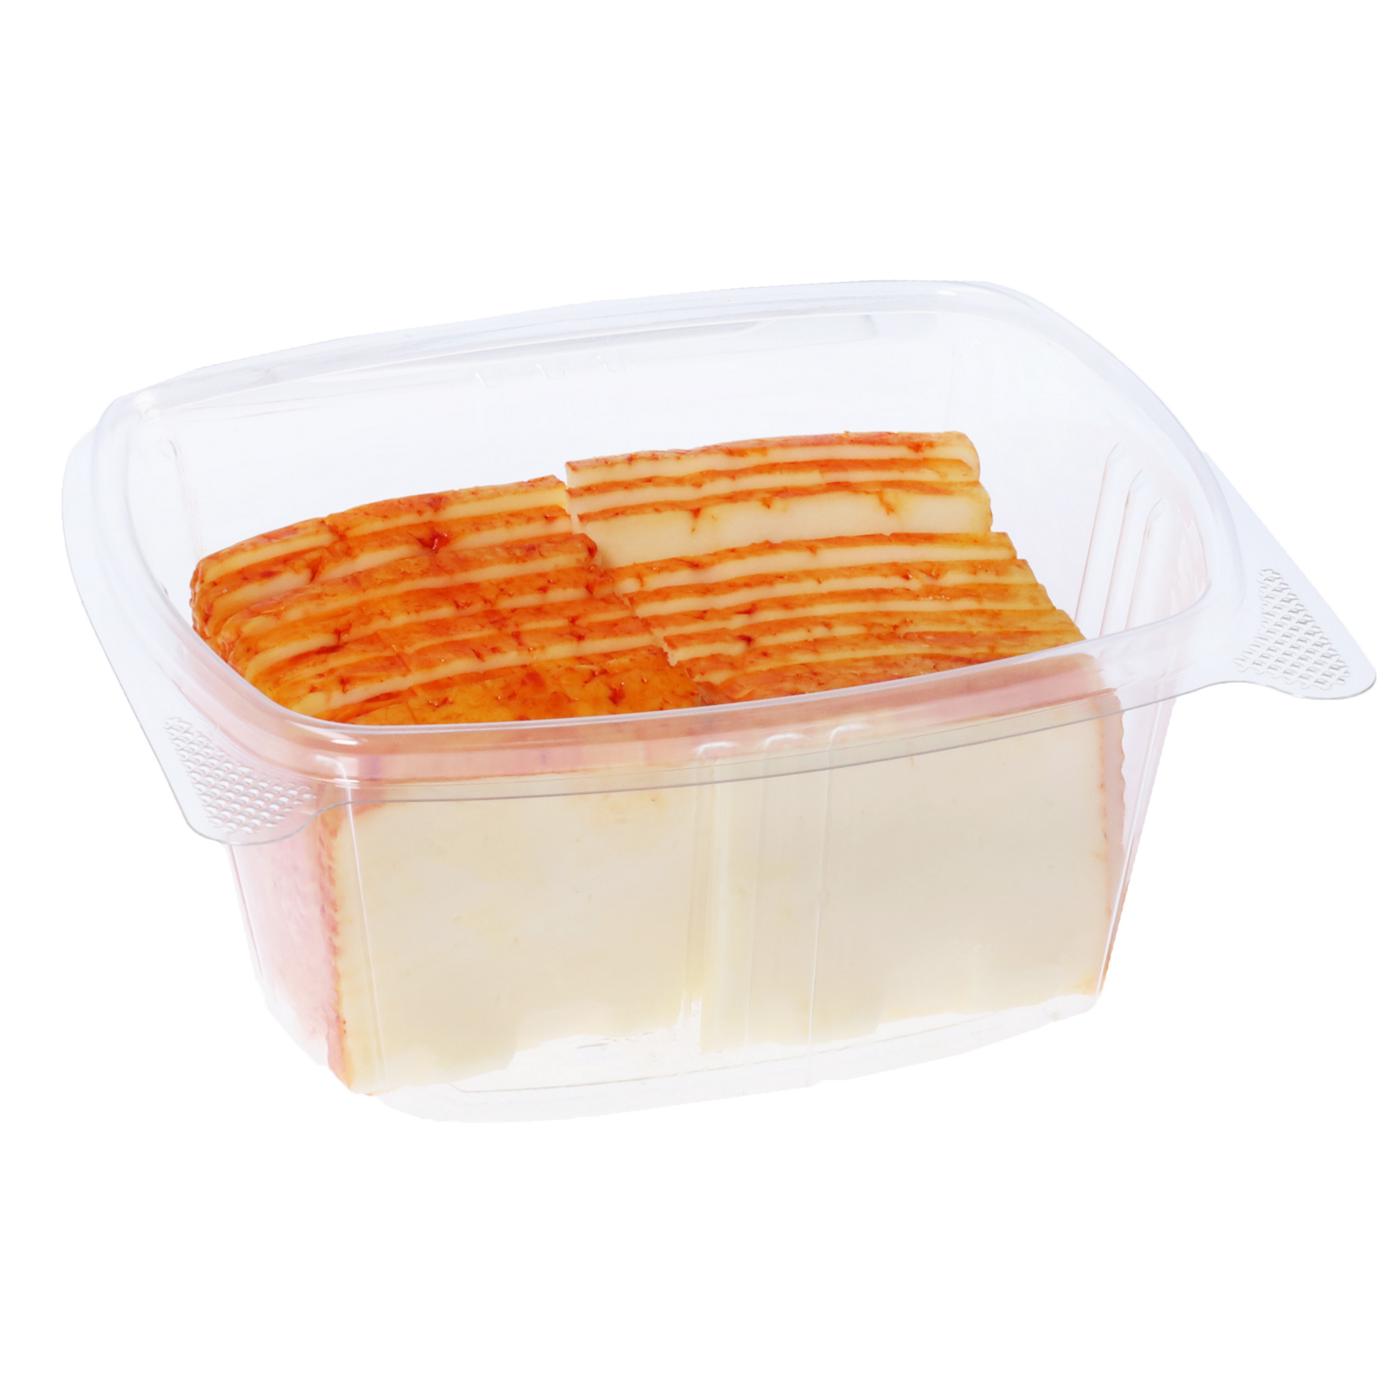 H-E-B Deli Muenster Cracker Cut Cheese; image 3 of 3